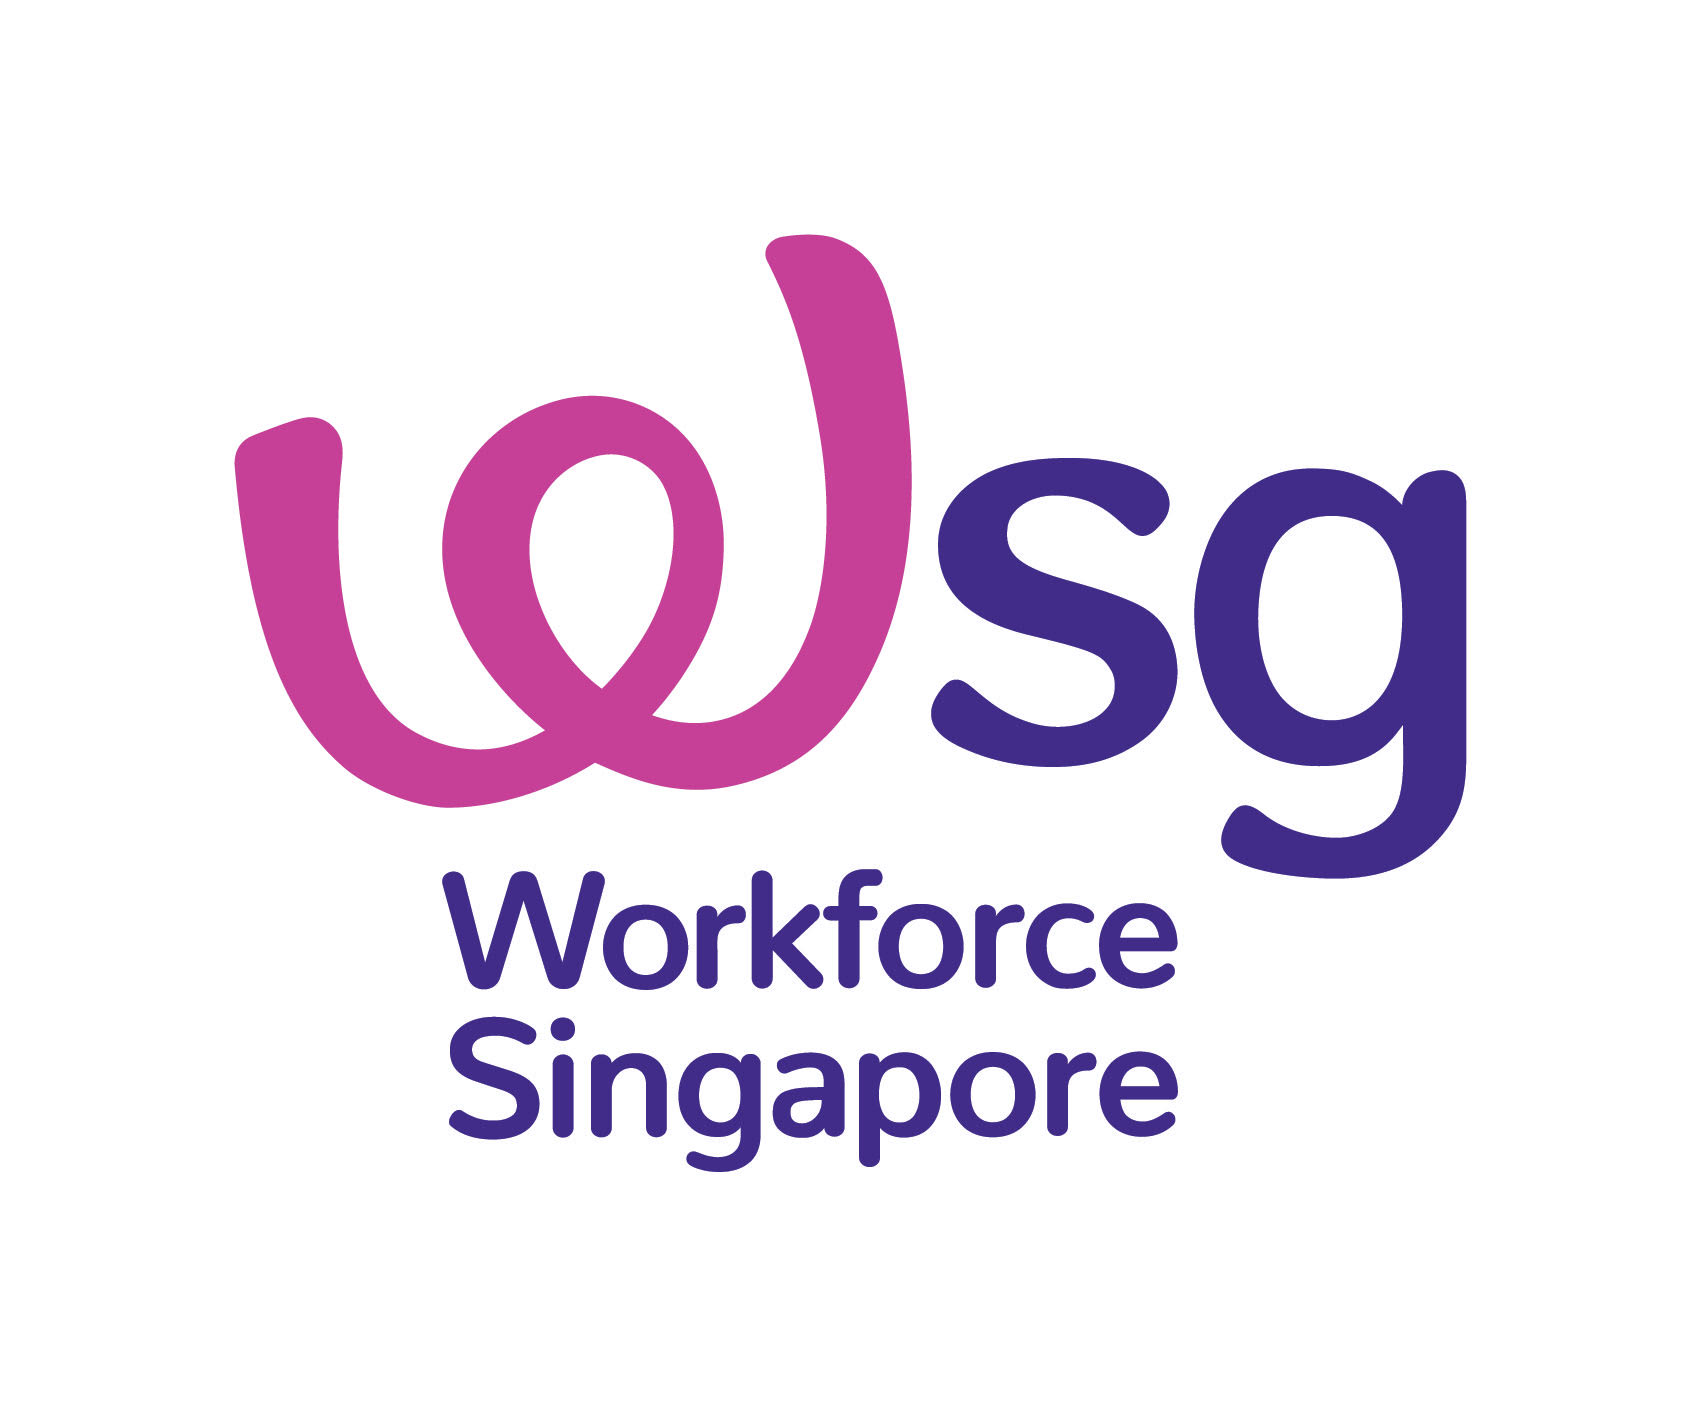 wsg-logo